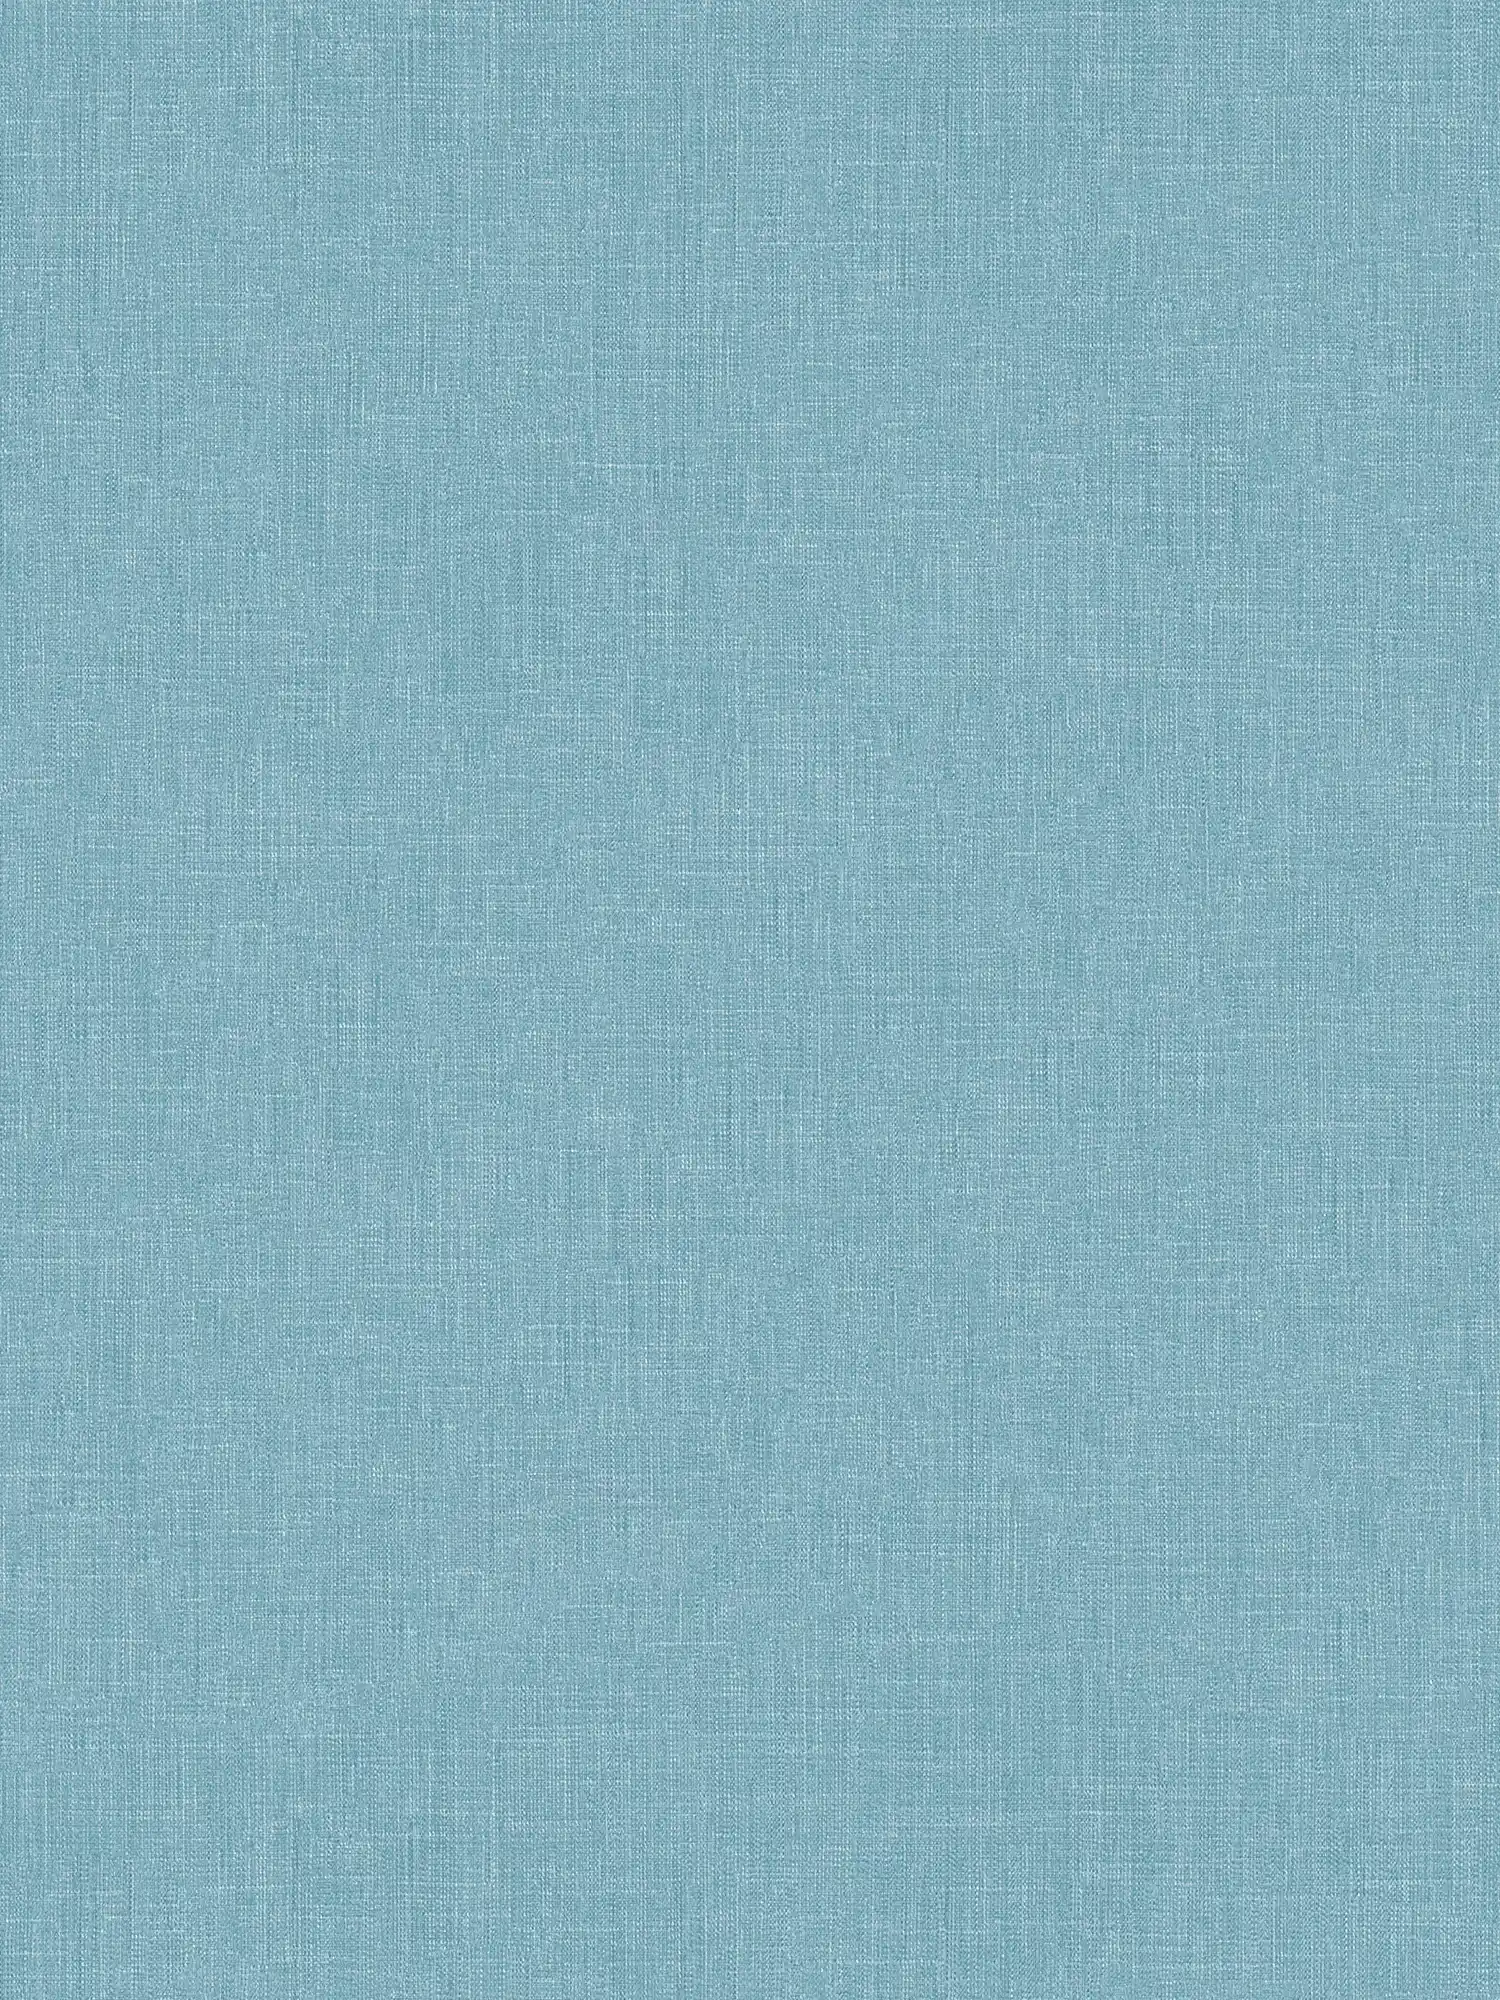 Carta da parati in tessuto non tessuto blu screziato con struttura tessile in stile bouclé
